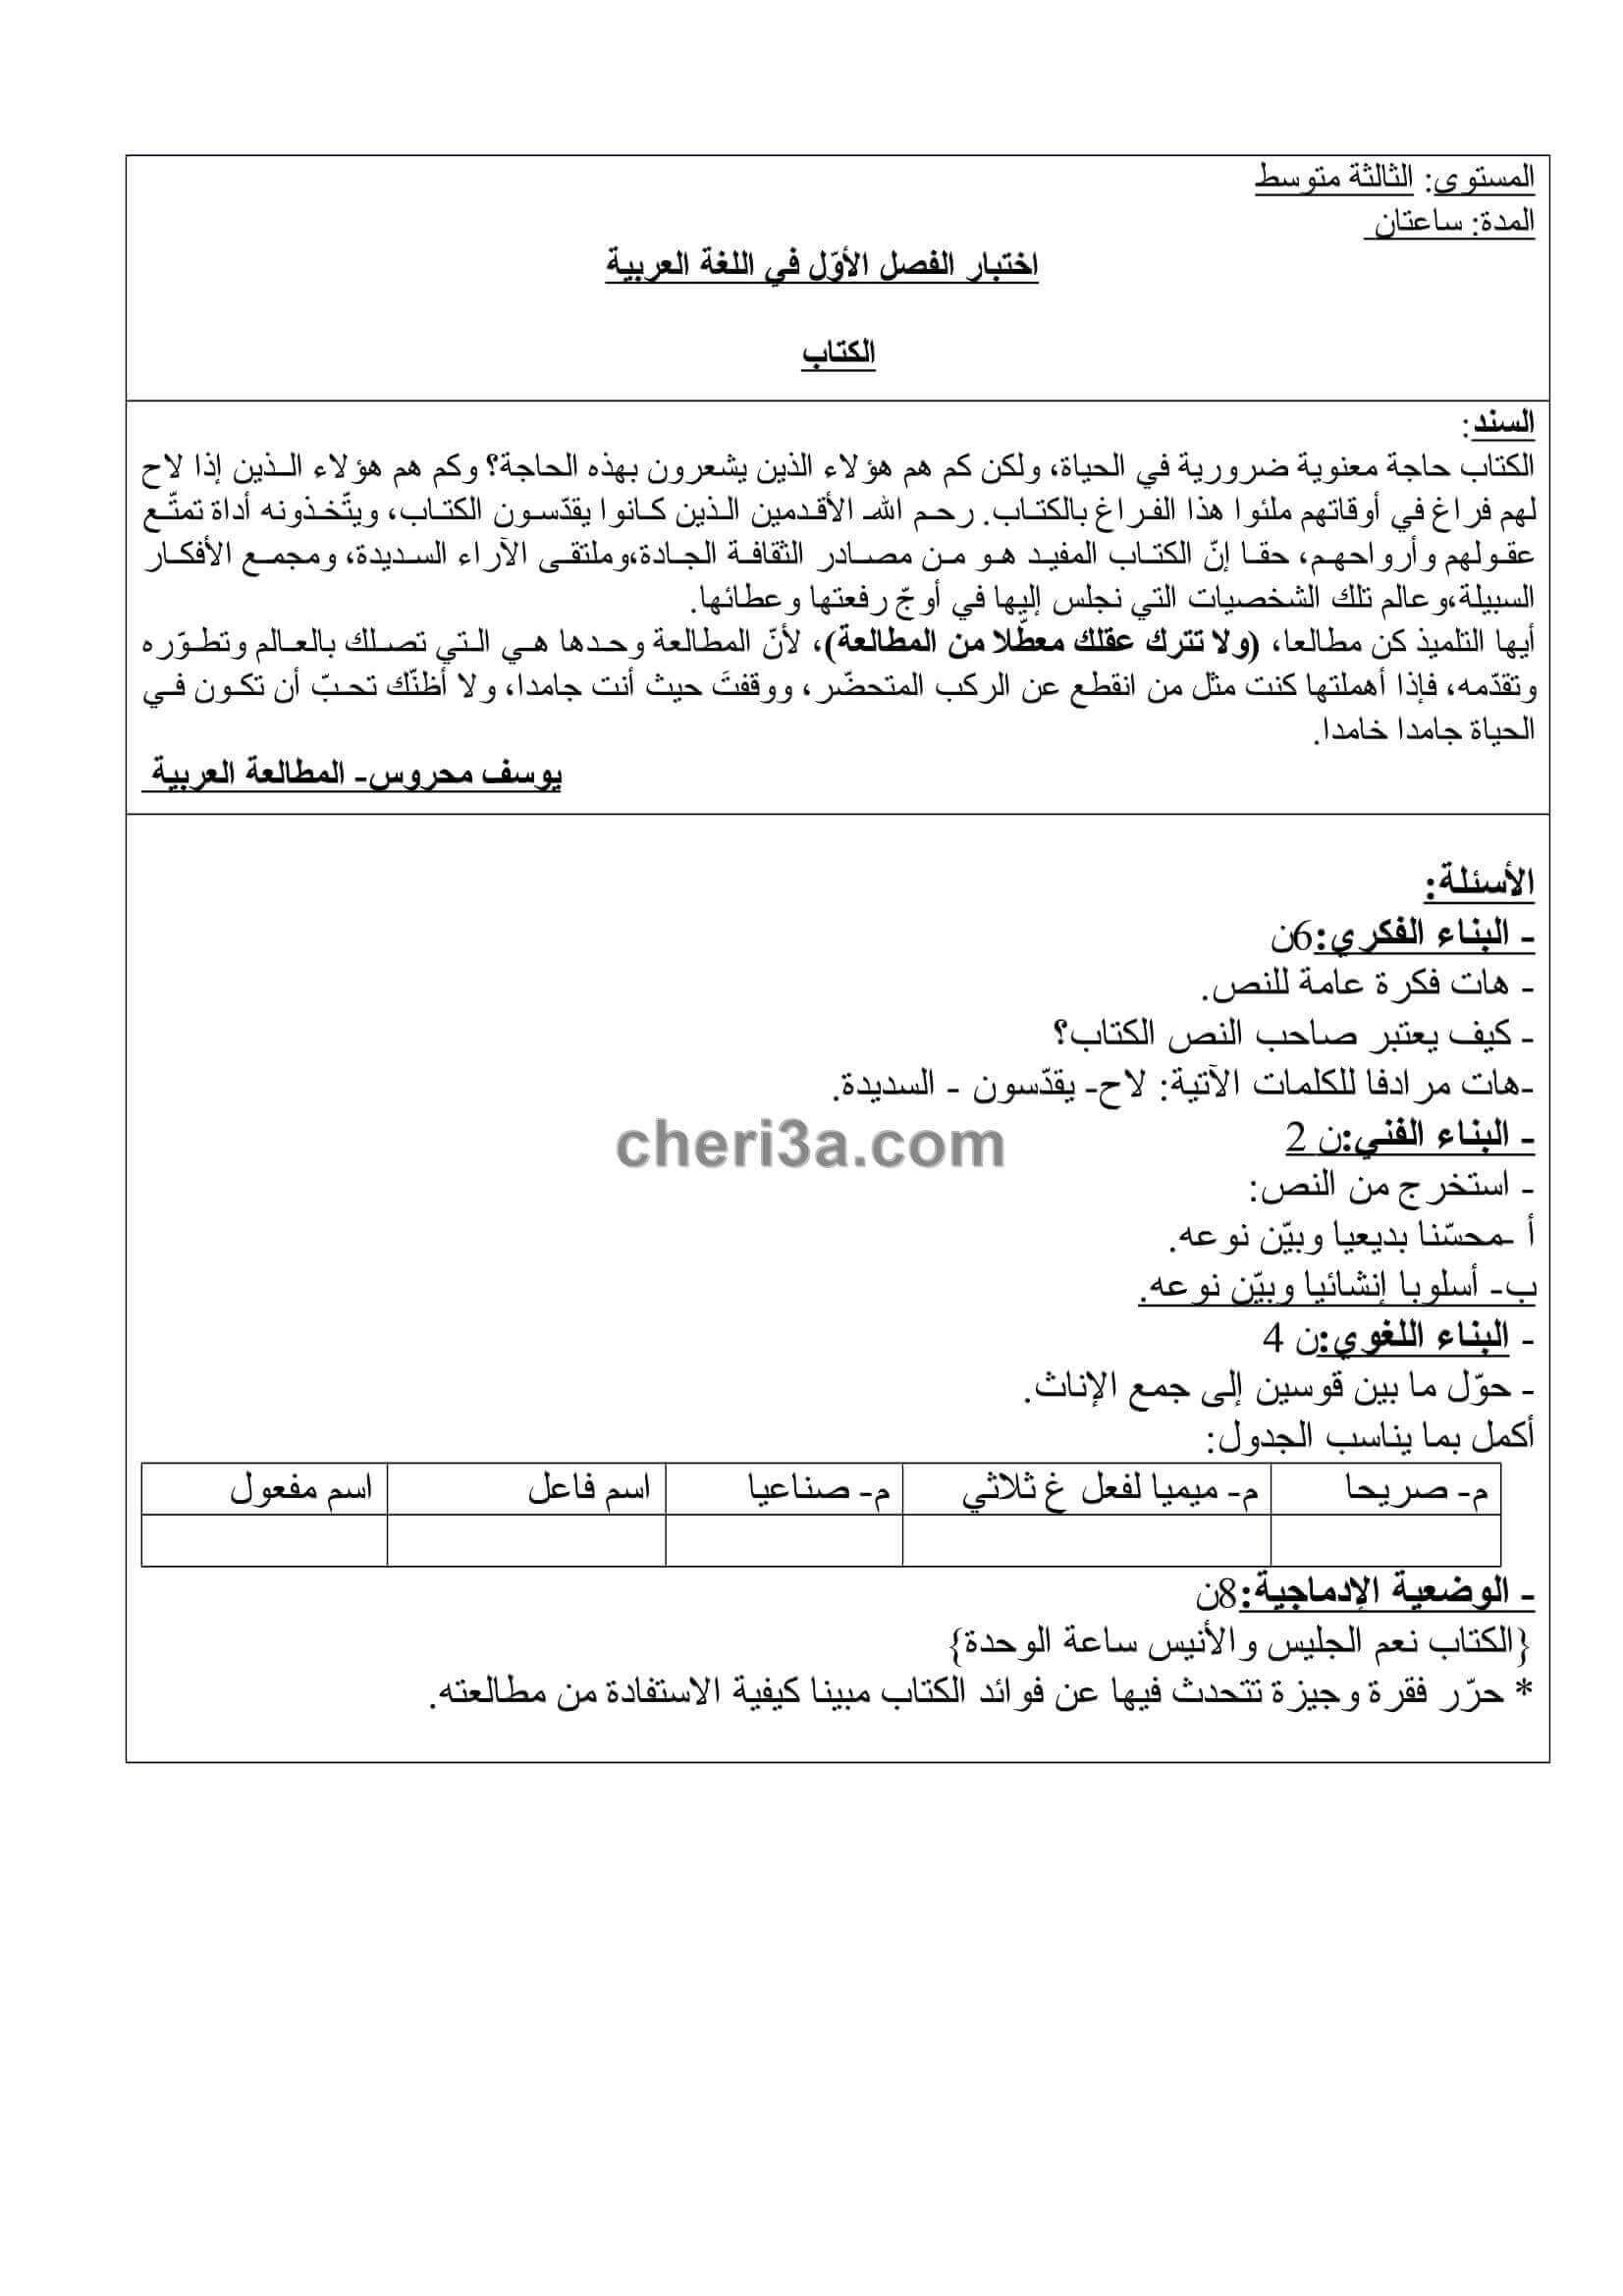 اختبار الفصل الاول للسنة الثالثة متوسط في اللغة العربية النموذج 10